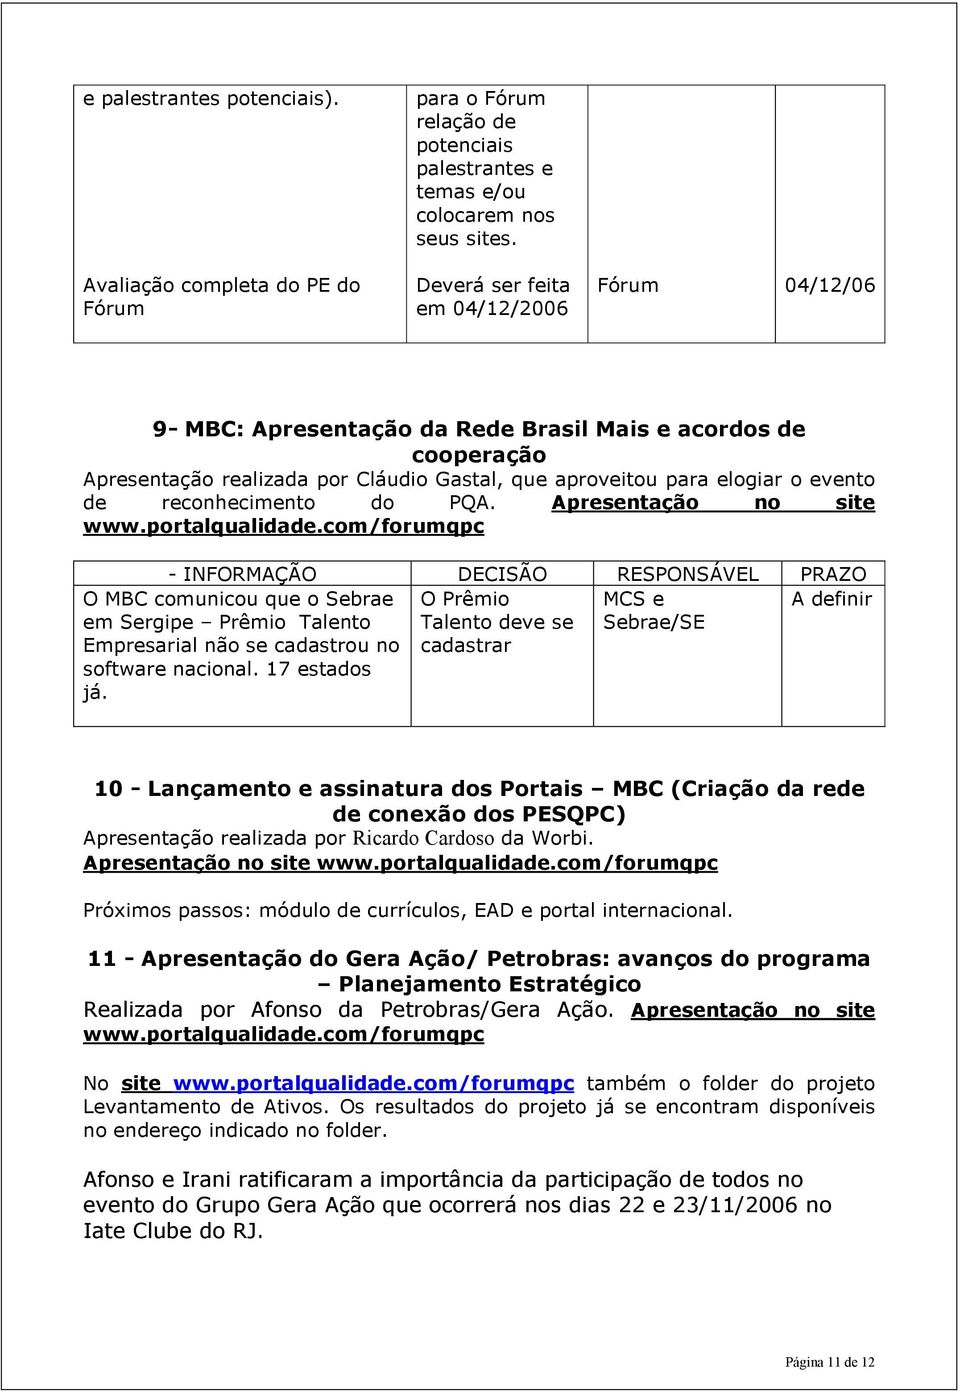 reconhecimento do PQA. Apresentação no site www.portalqualidade.com/forumqpc - O MBC comunicou que o Sebrae em Sergipe Prêmio Talento Empresarial não se cadastrou no software nacional. 17 estados já.